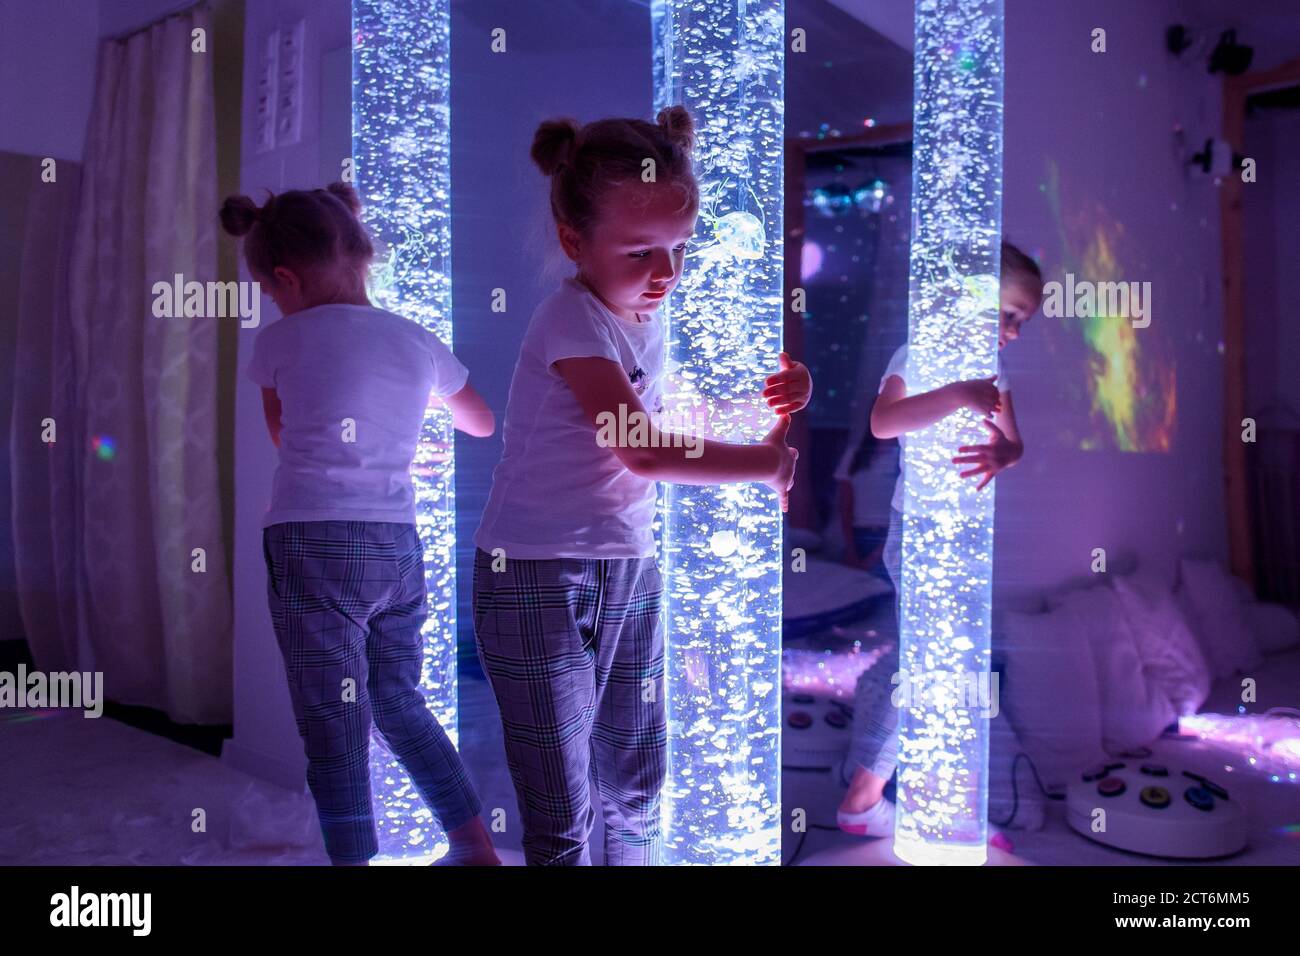 Kind in der Therapie sensorische Stimulation, snoezelen. Kind Interaktion  mit farbigen Lichtern bubble Rohr Lampe während der therapiesitzung  Stockfotografie - Alamy